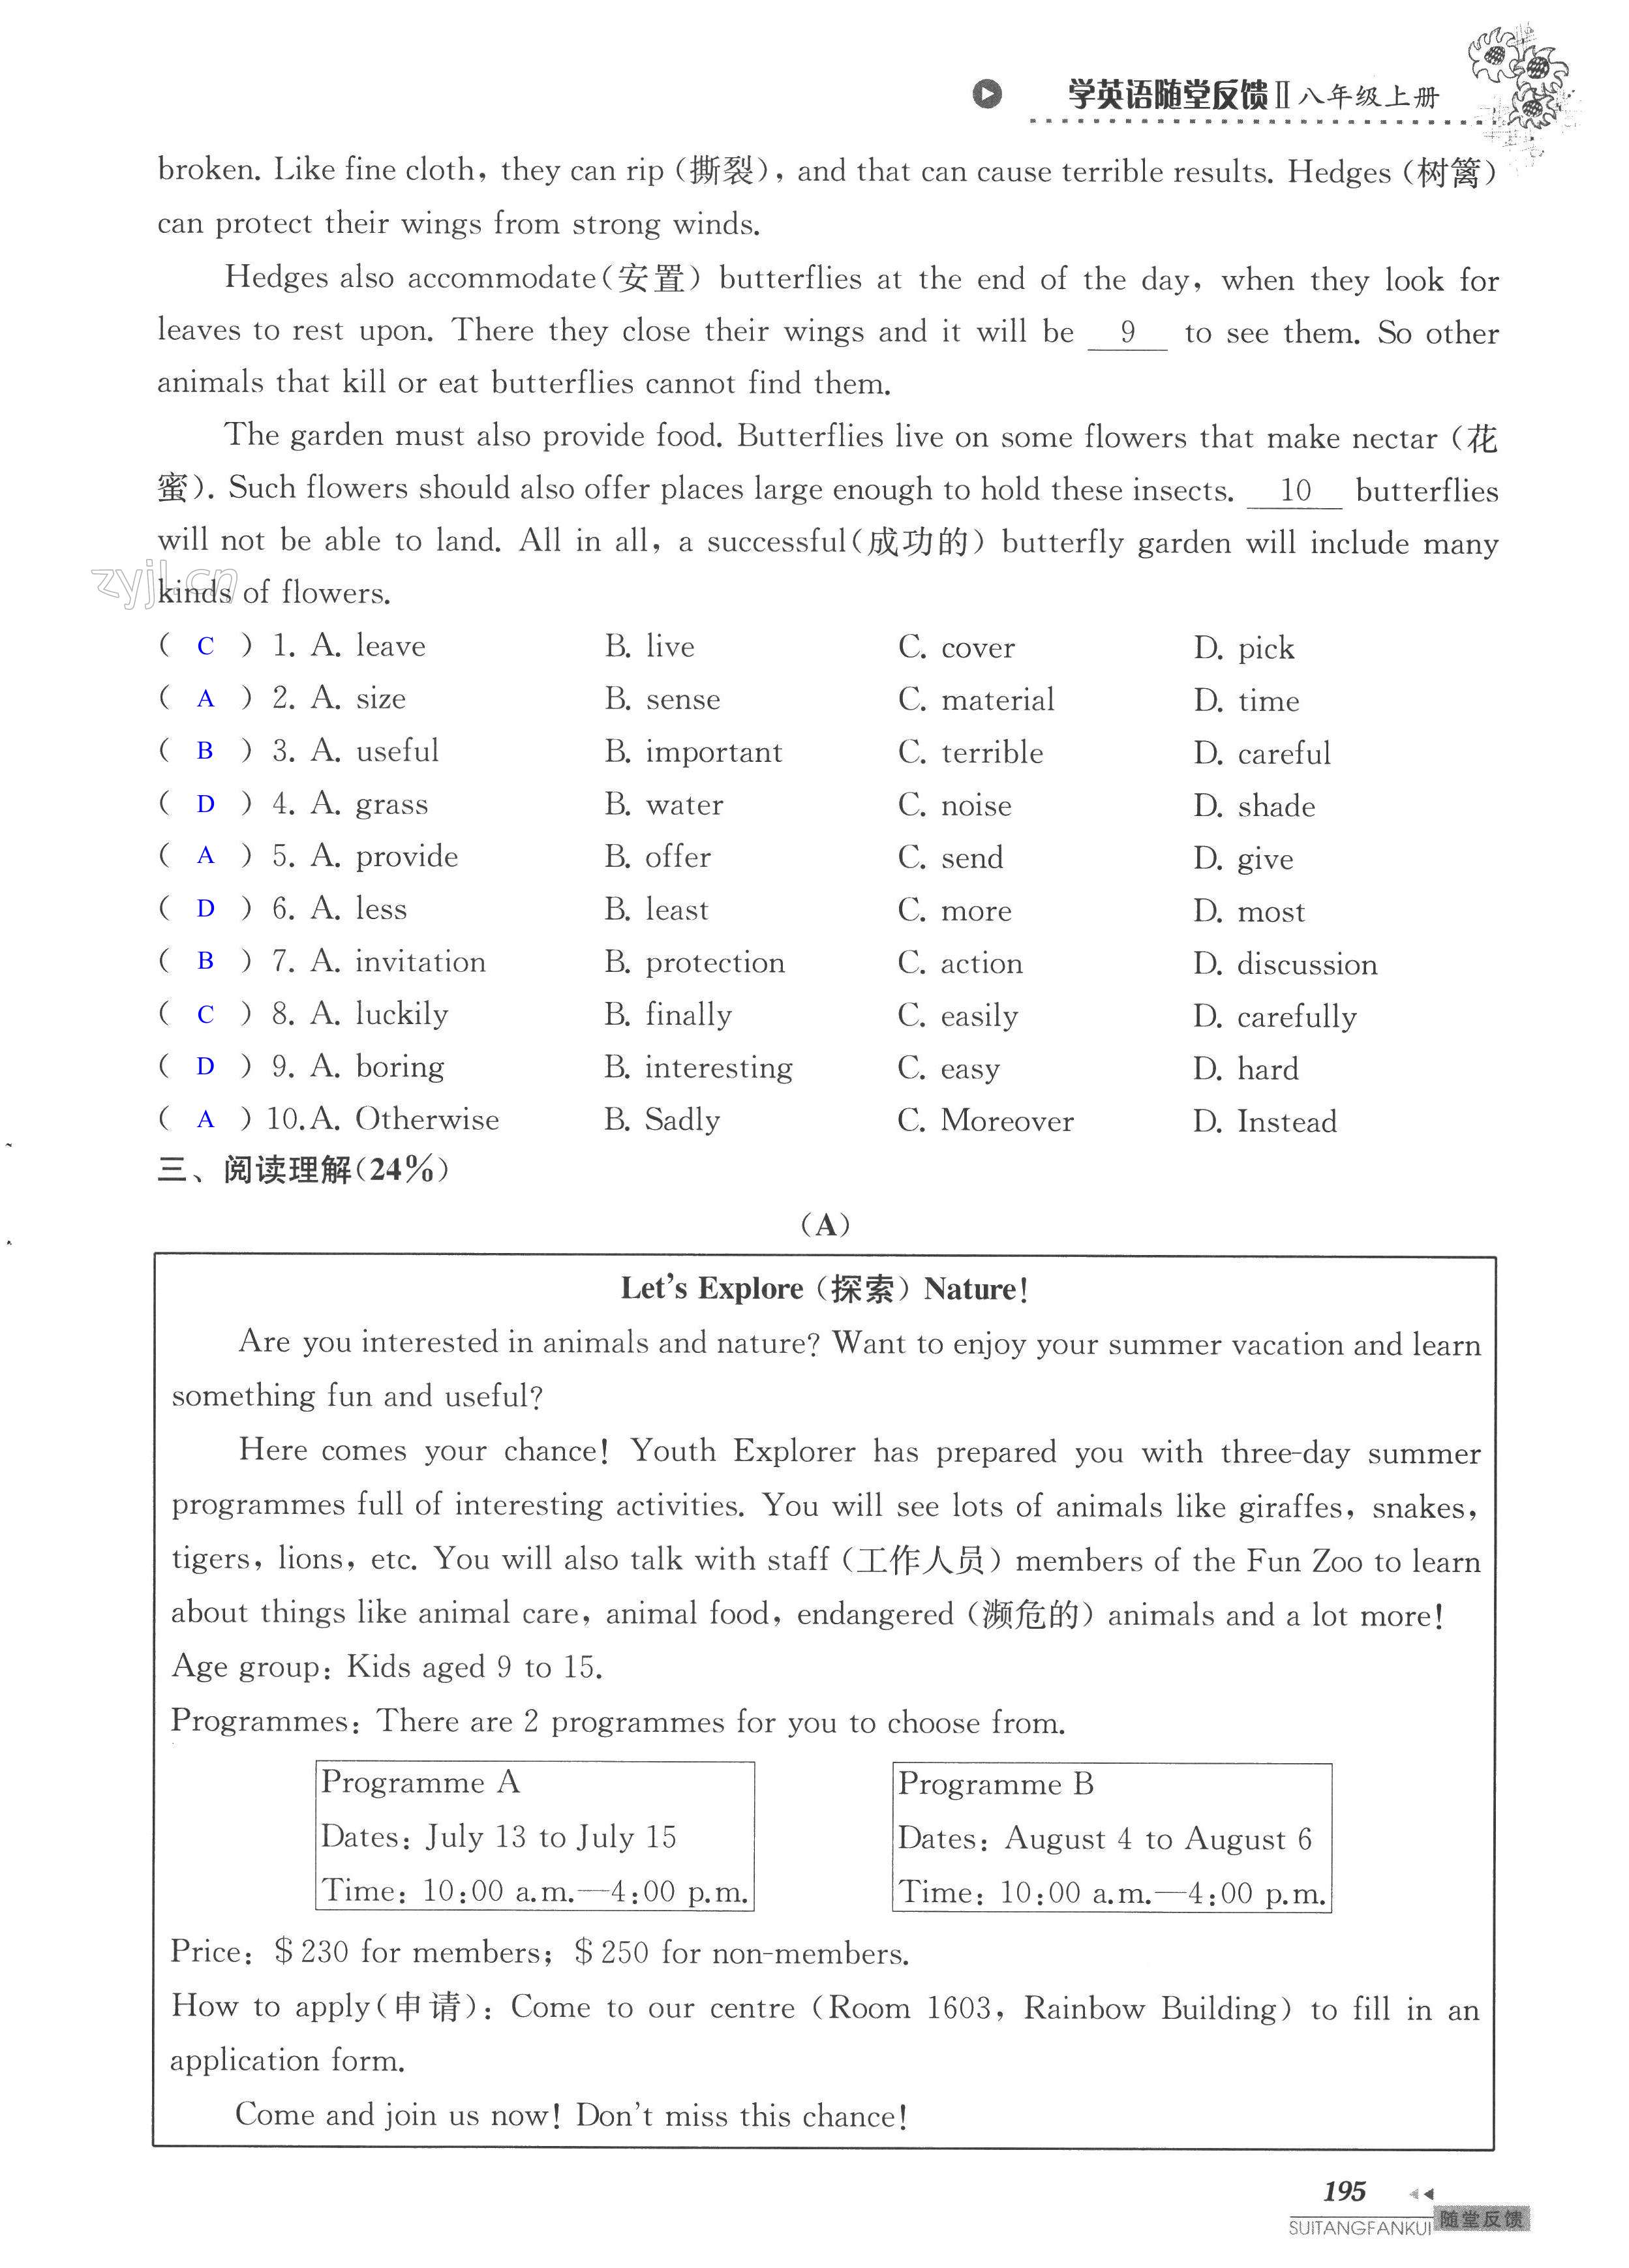 单元综合测试卷 Test for Unit 6 of 8A - 第195页